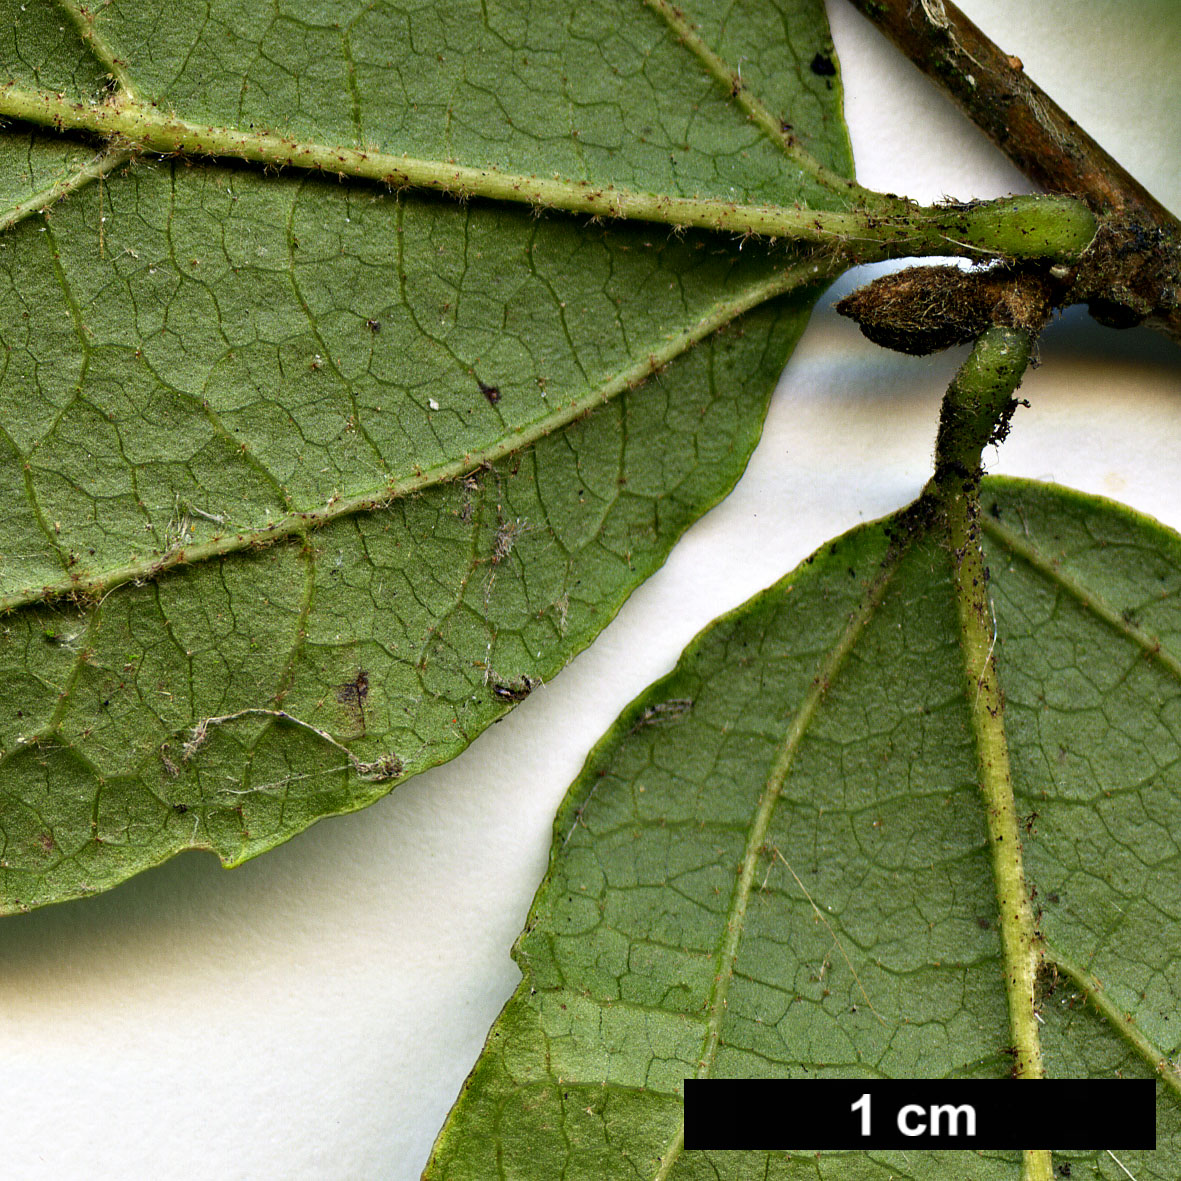 High resolution image: Family: Hamamelidaceae - Genus: Parrotia - Taxon: subaequalis